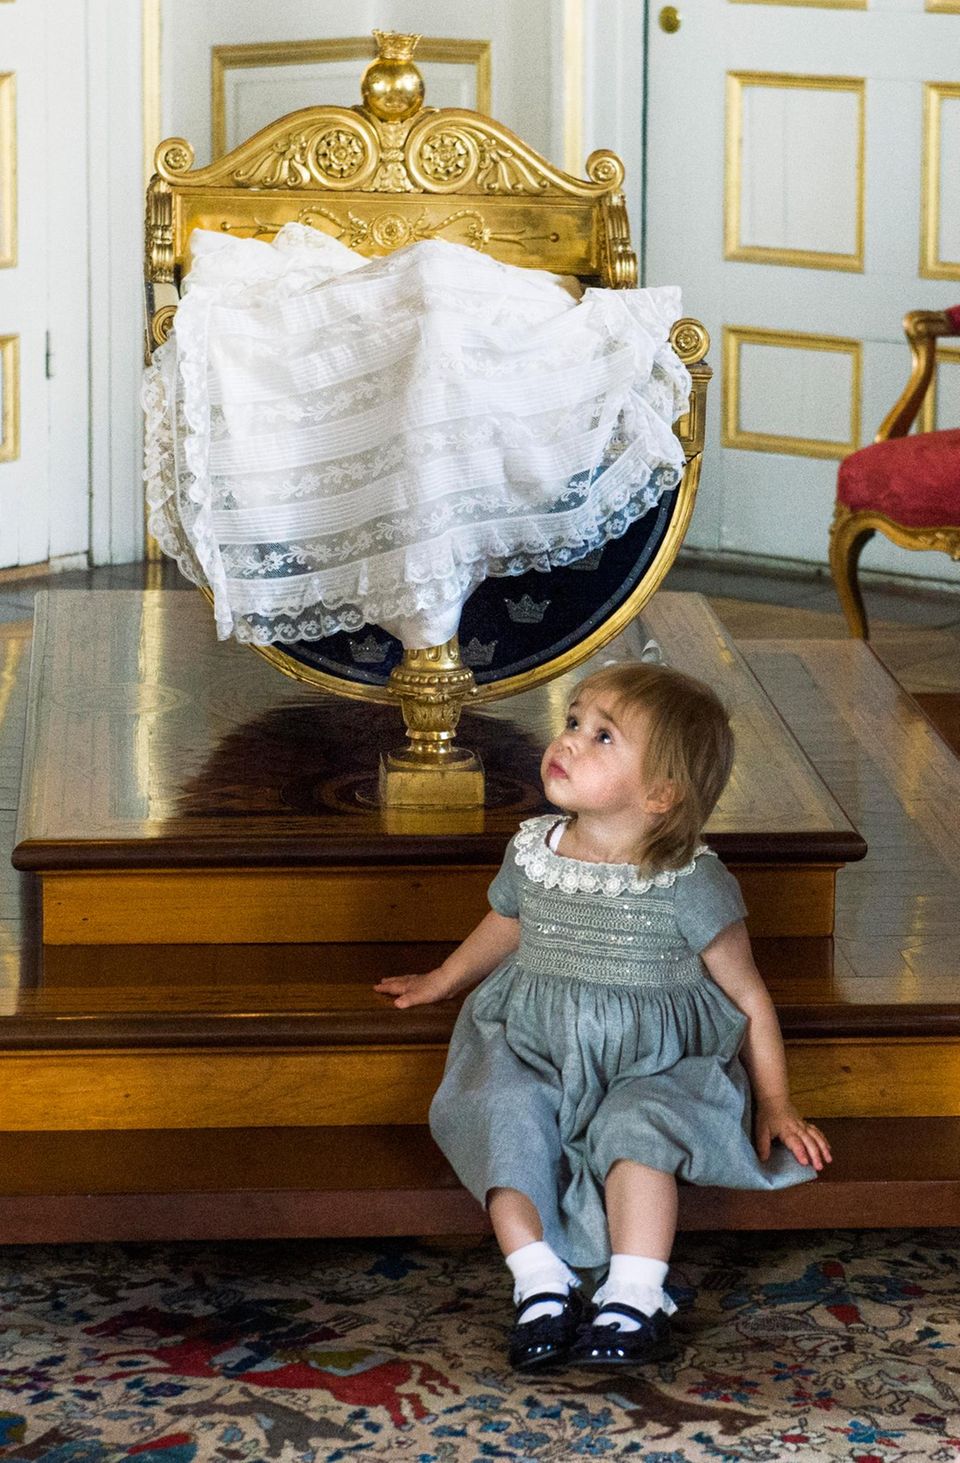 Prinzessin Leonore posiert vor der Wiege, in der gleich Prinz Nicolas liegen wird. Hier haben schon viele königliche Babys geschlummert.